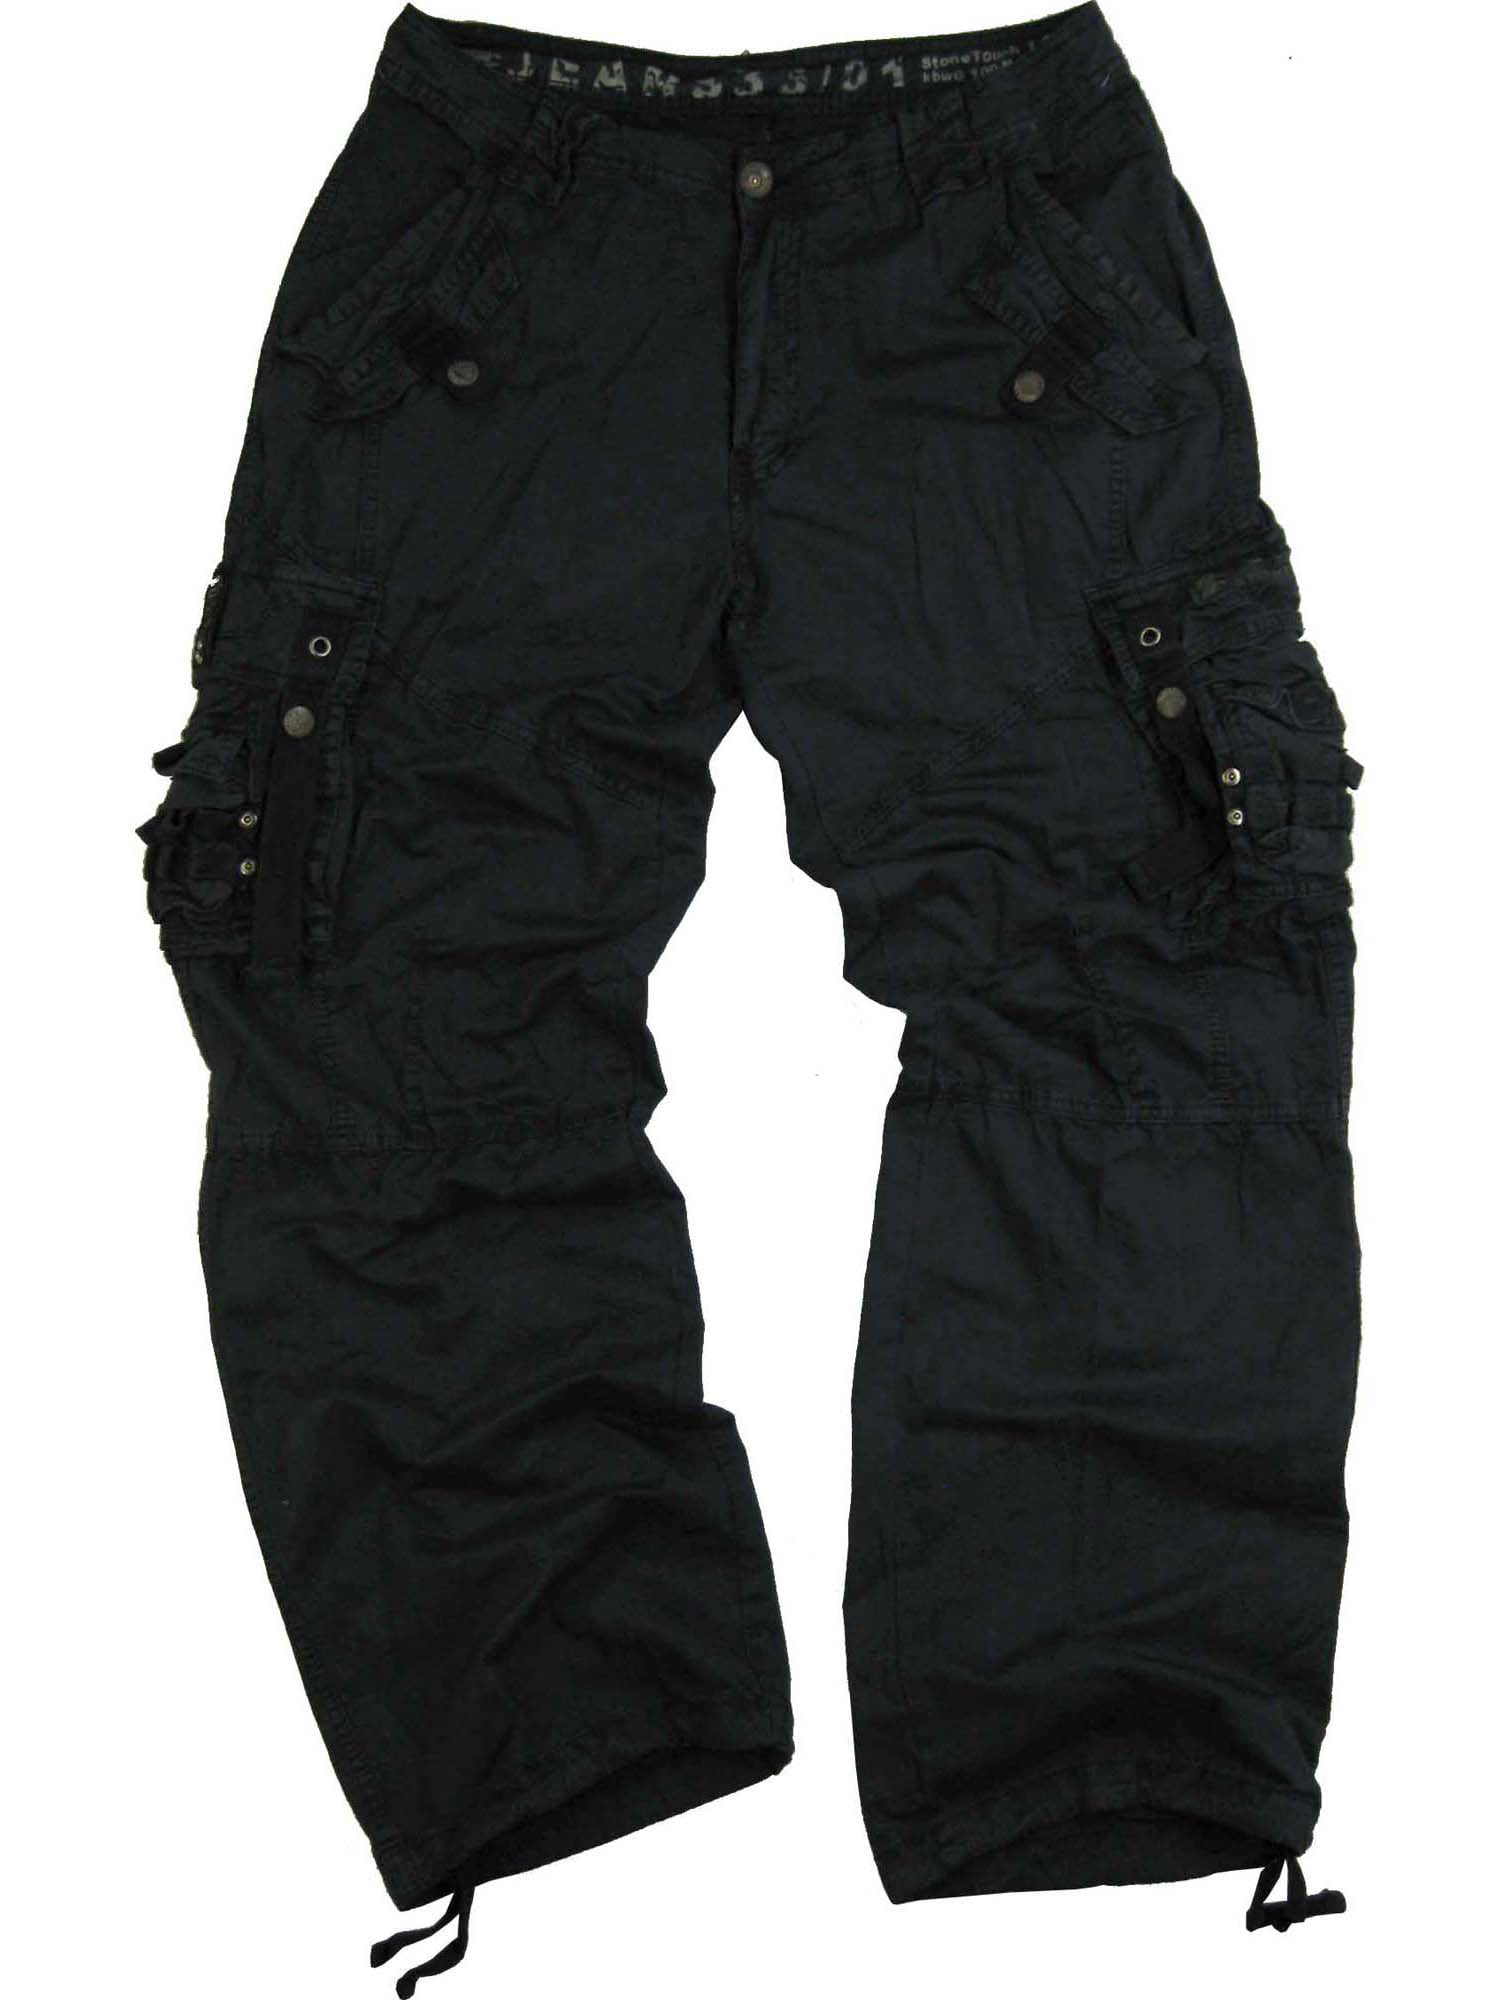 Men's Military Cargo Pants 36x34 Navy #12211 - Walmart.com